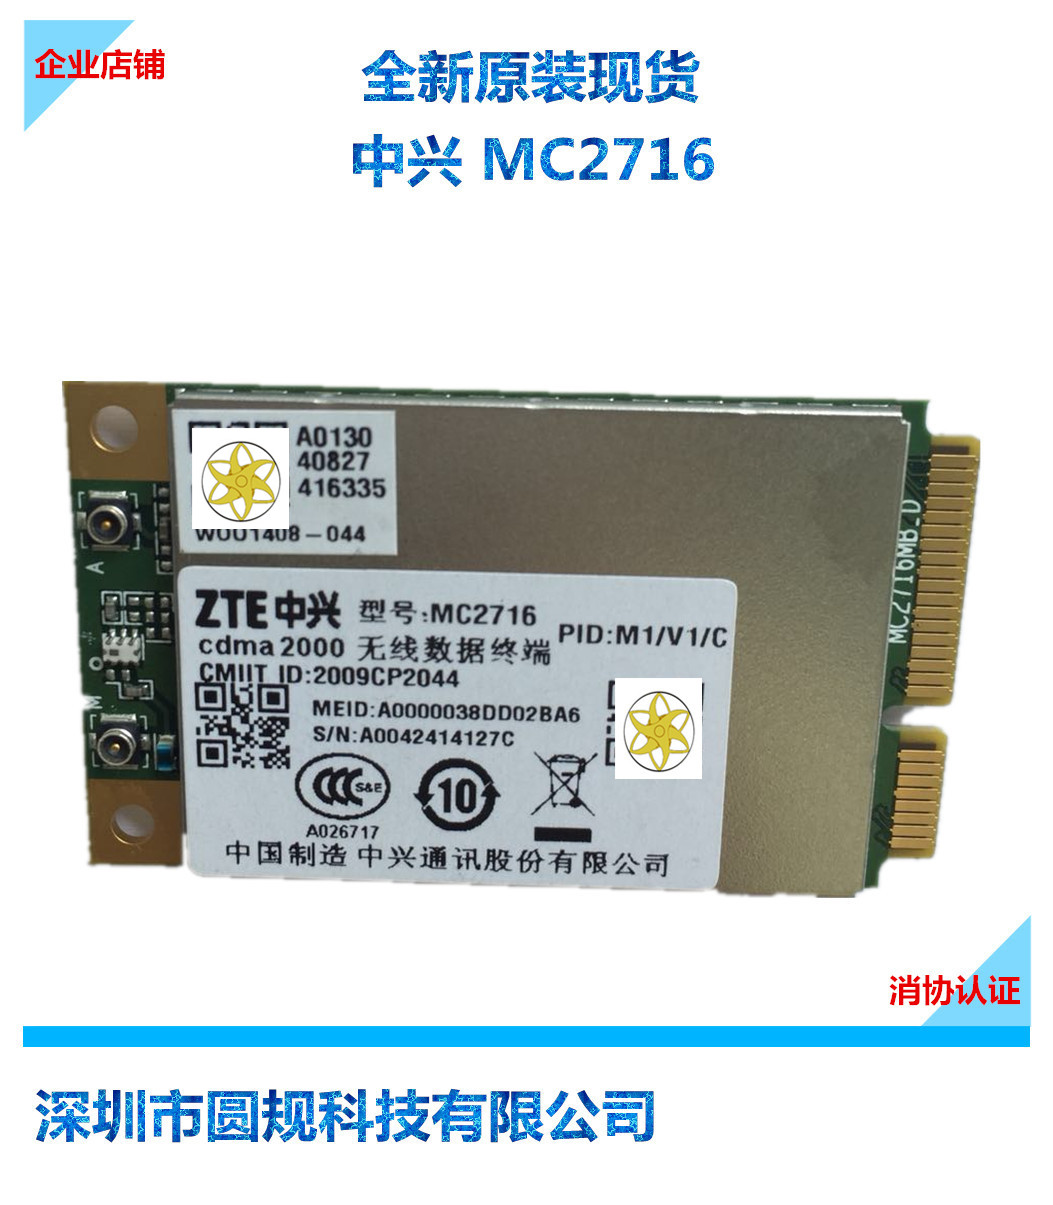 MC2716 全新中兴EVDO模块电信3G模块MC2716通讯射频模块CDMA2000